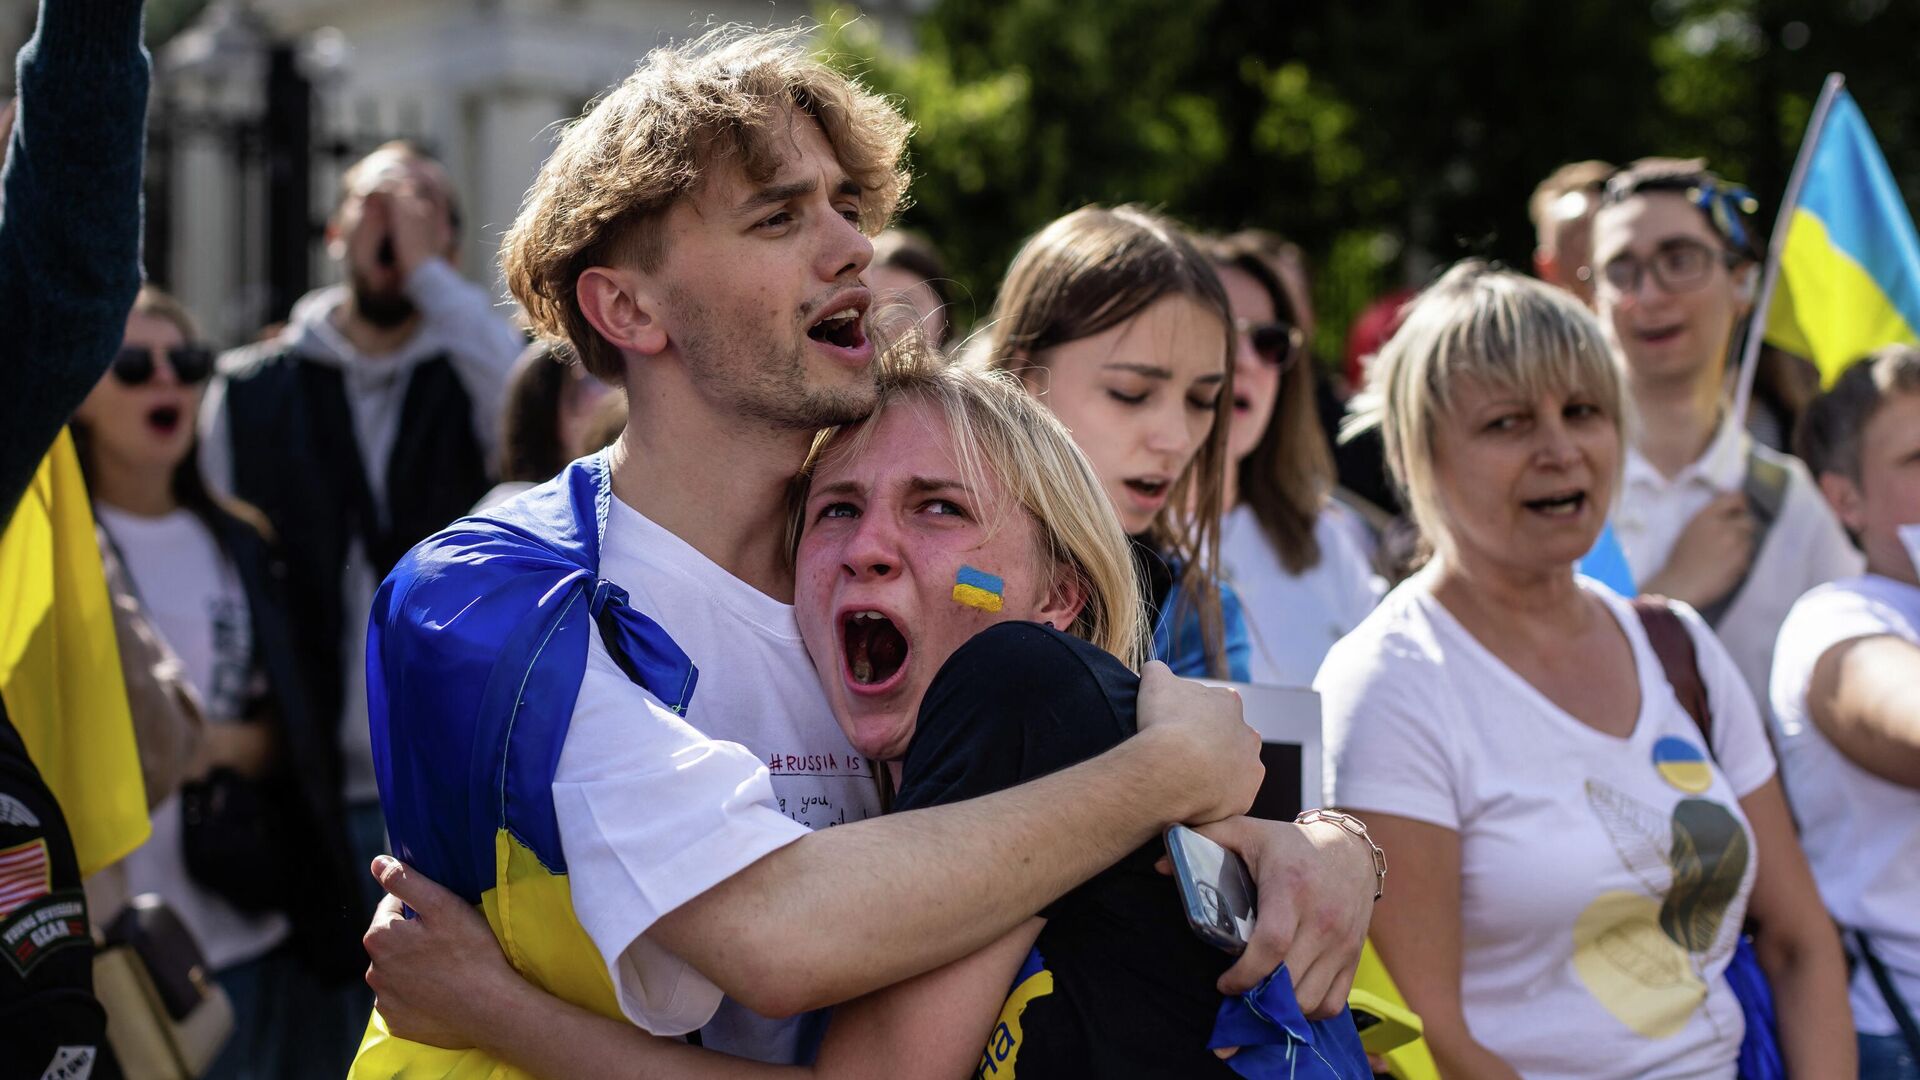 Народы украины против. Шведы болельщики. Украинцы в Европе. Русские и украинцы. Польская молодежь.